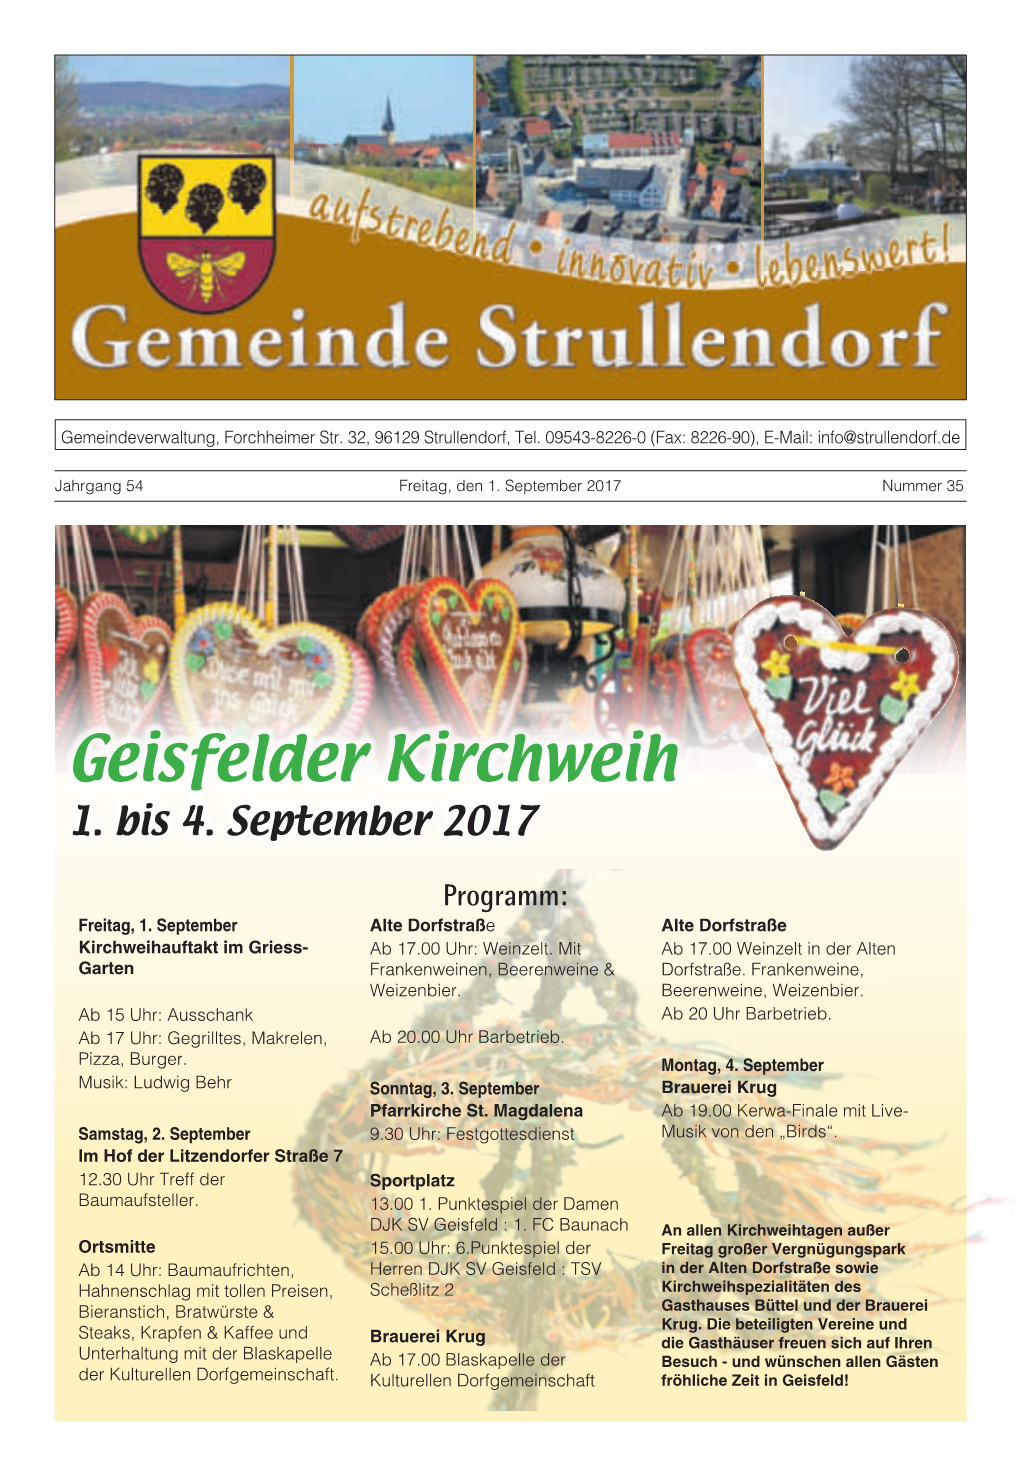 Geisfelder Kirchweih 1